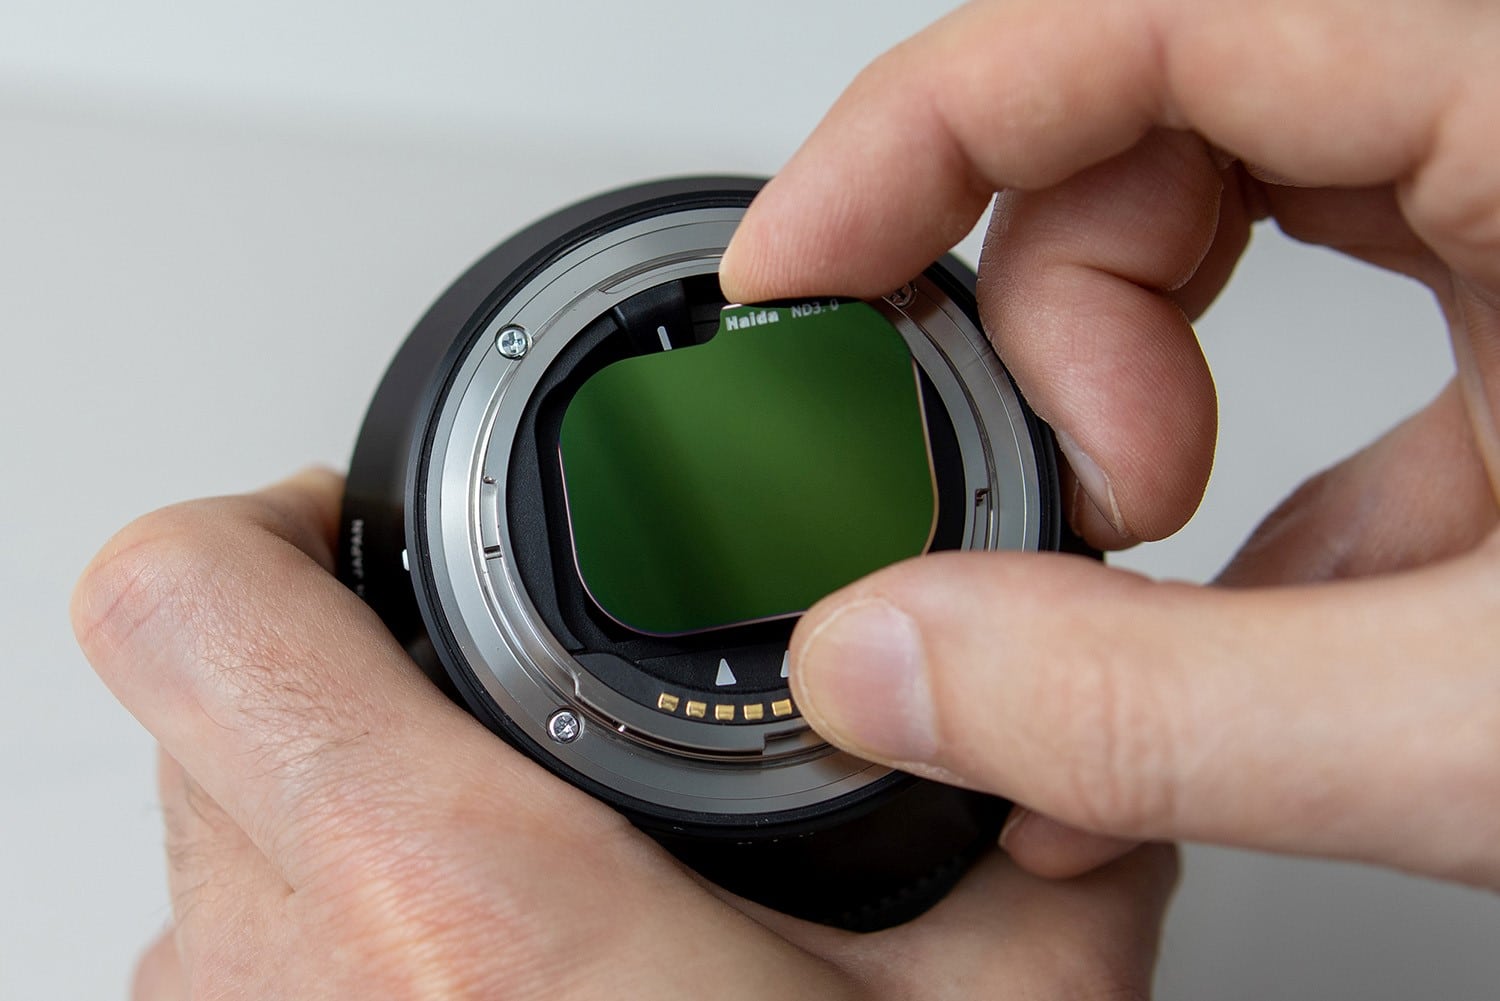 Ống kính Sigma 14-24mm F2.8 DG DN Art cho Sony E